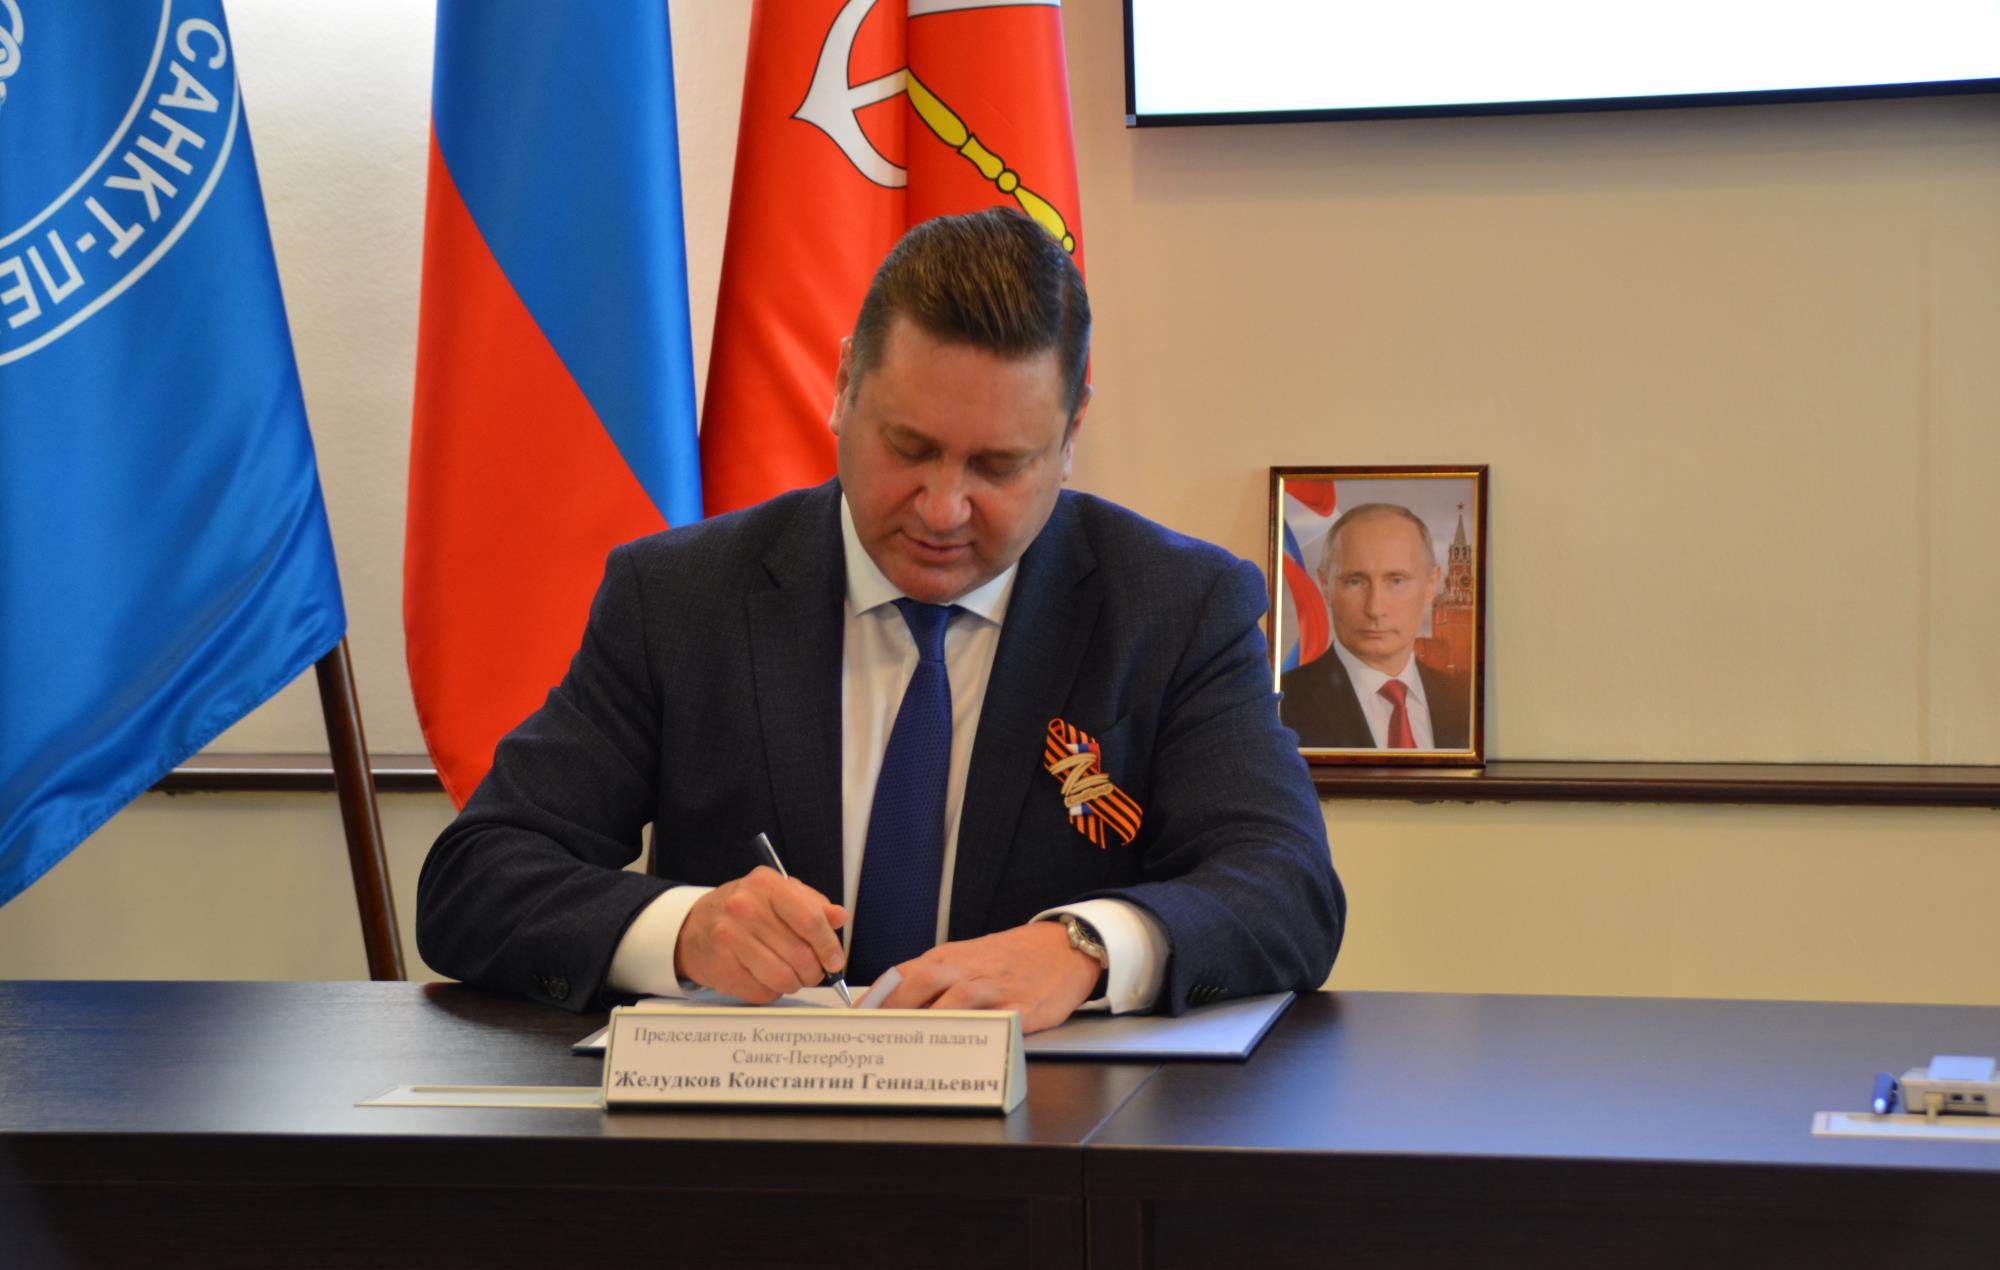 Контрольно-счетные палаты Санкт-Петербурга и Москвы заключили соглашение о сотрудничестве